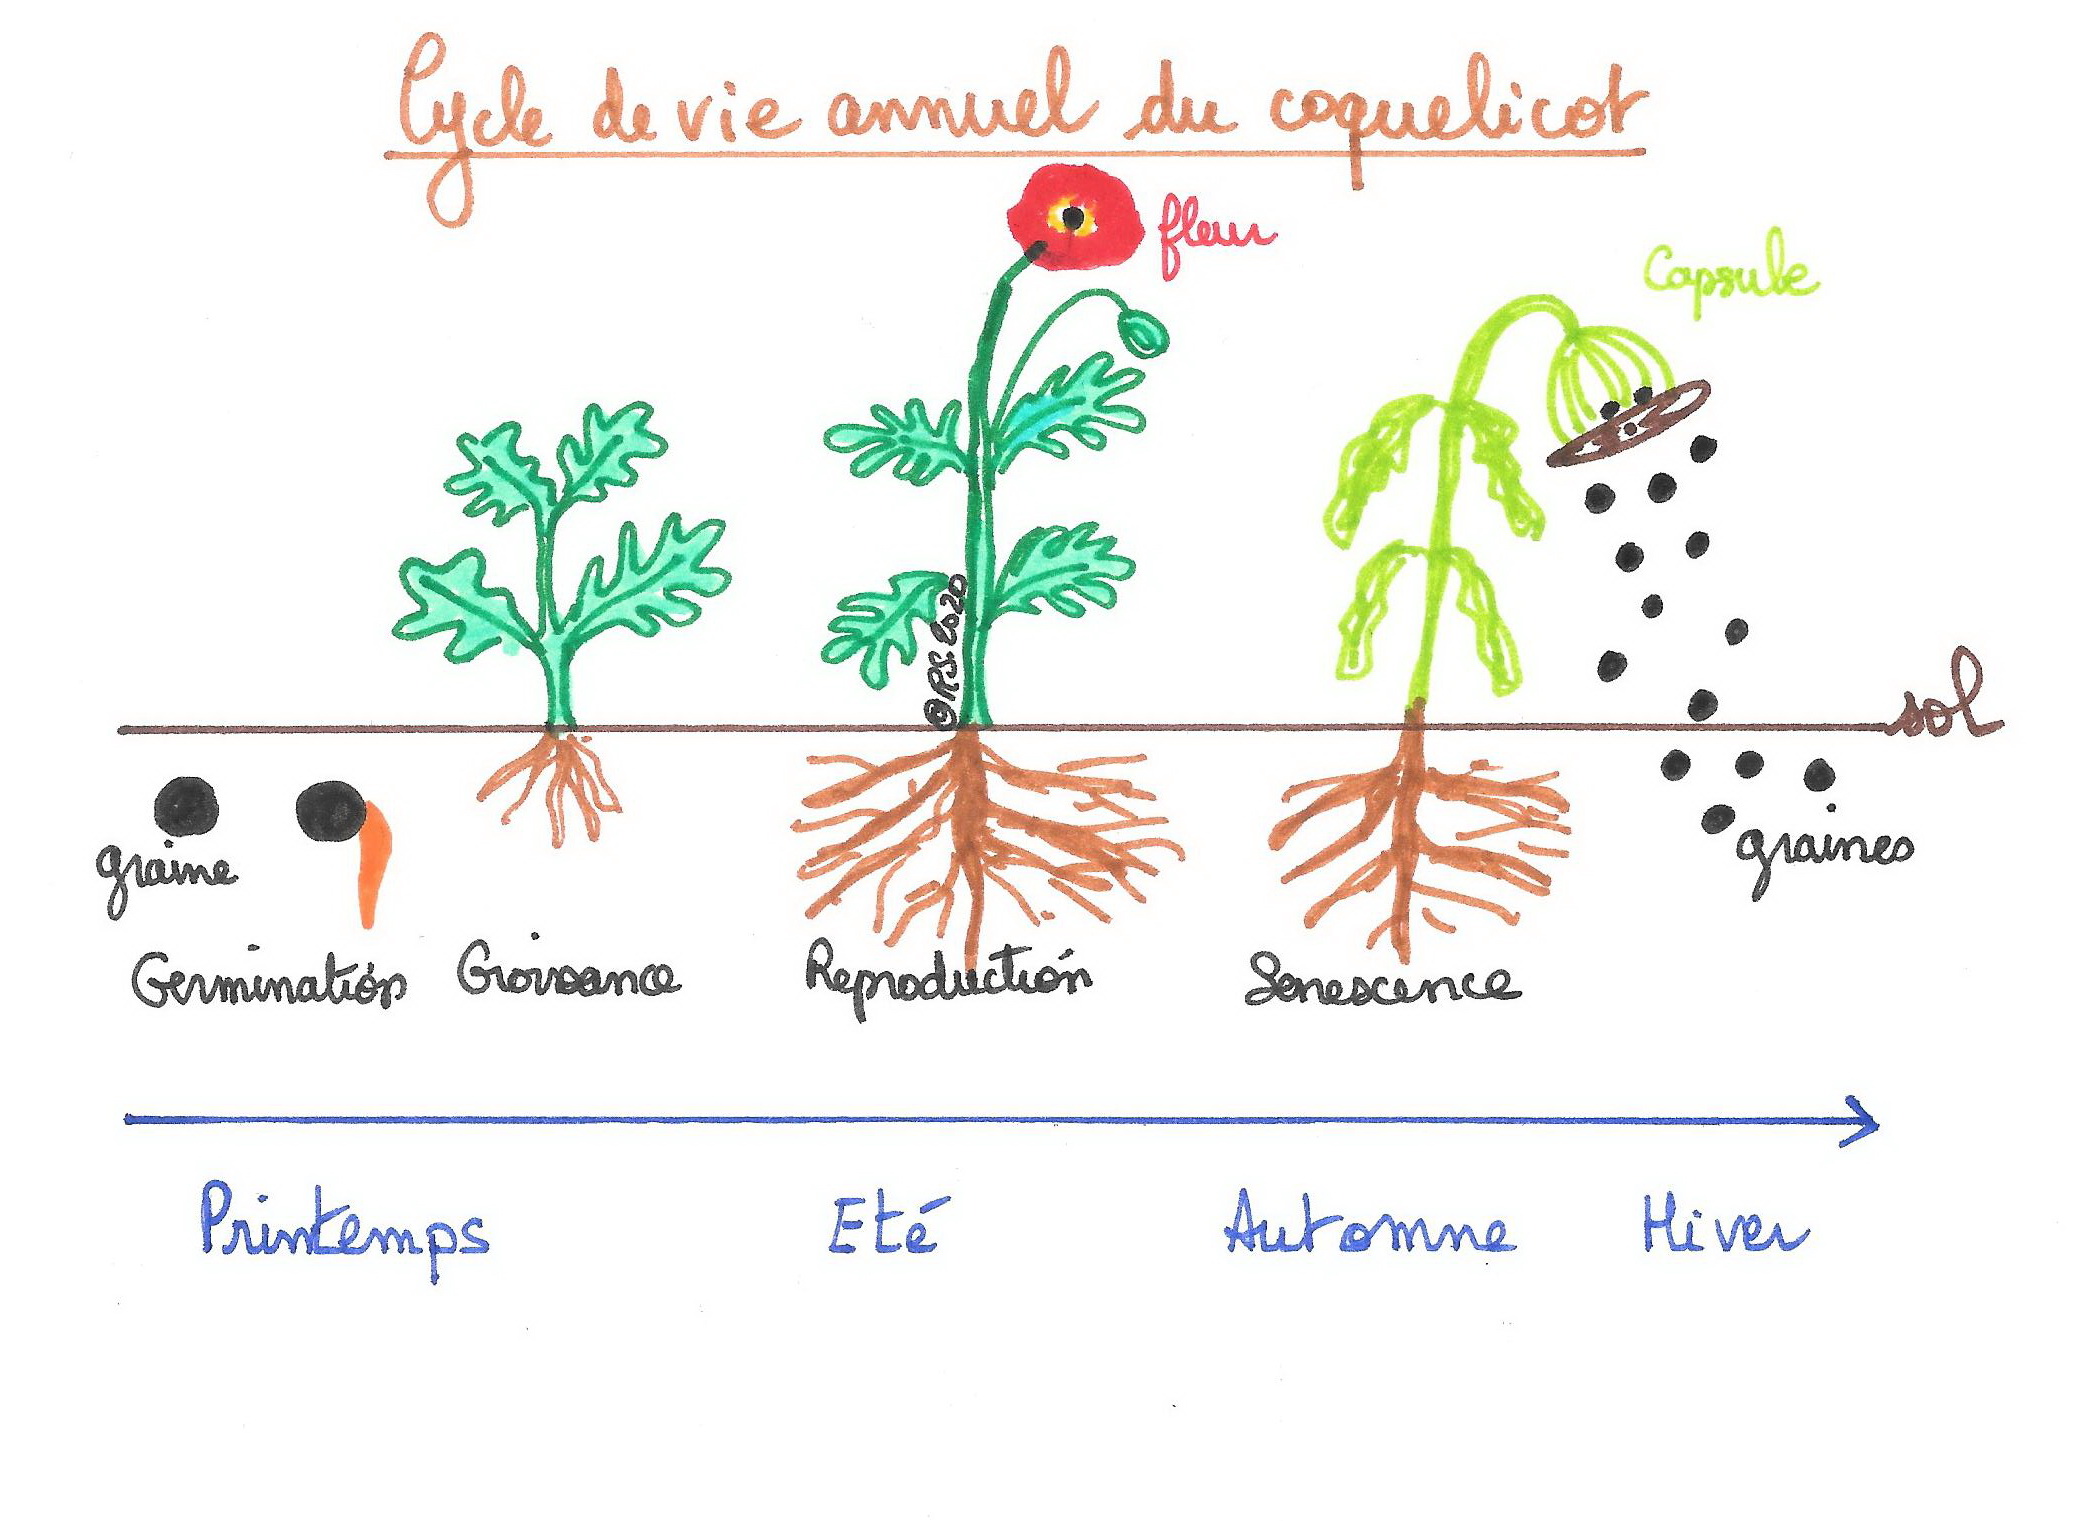 <b>Cycle de vie d’une plante annuelle : le coquelicot</b>